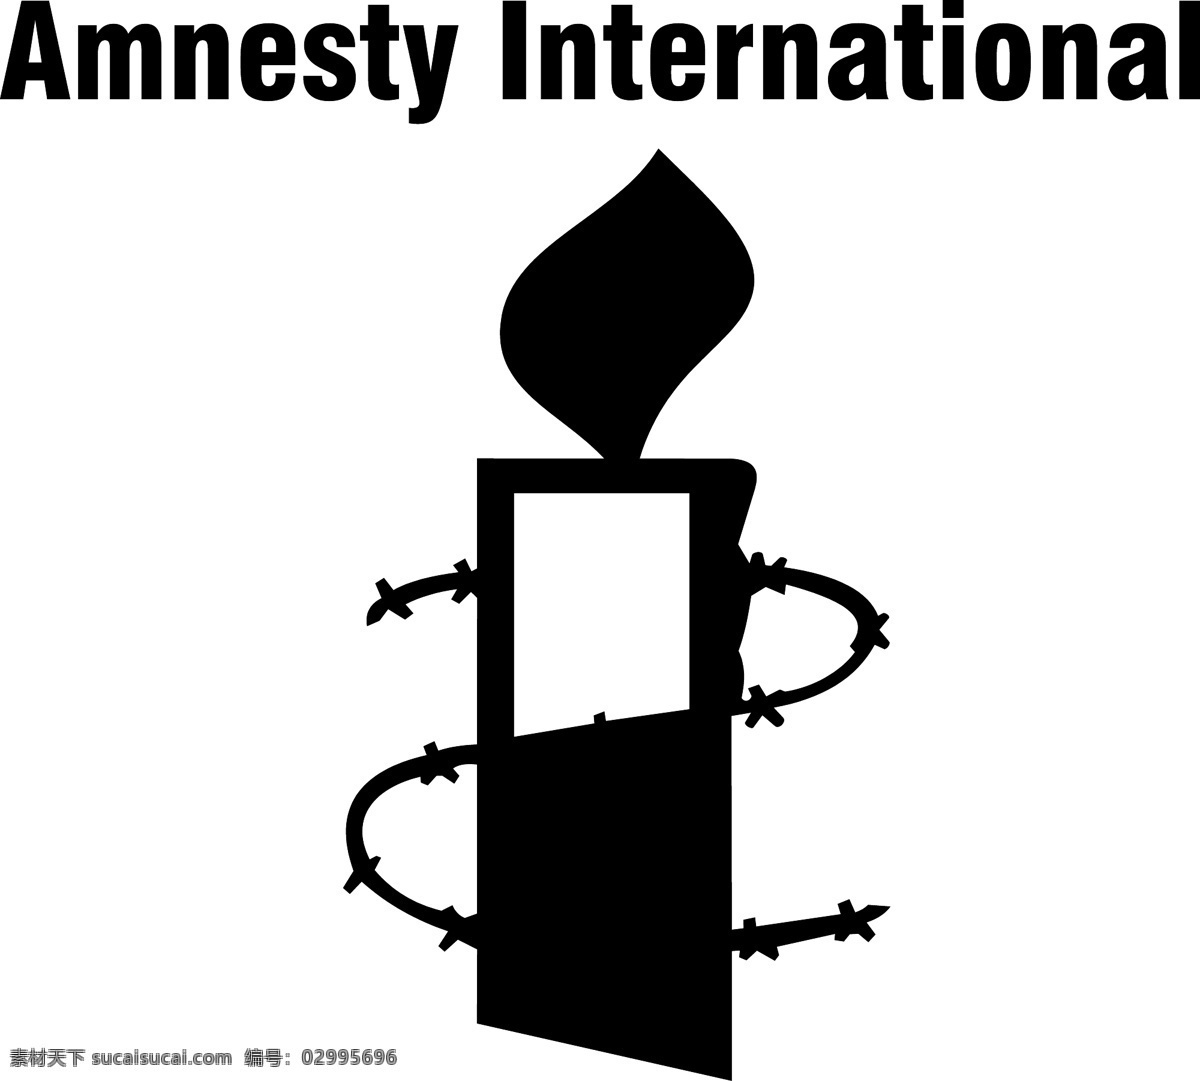 国际 特赦 组织 致力于 保护 人权 世界 免费 组织工作 全球 标志 保障 自由 白色